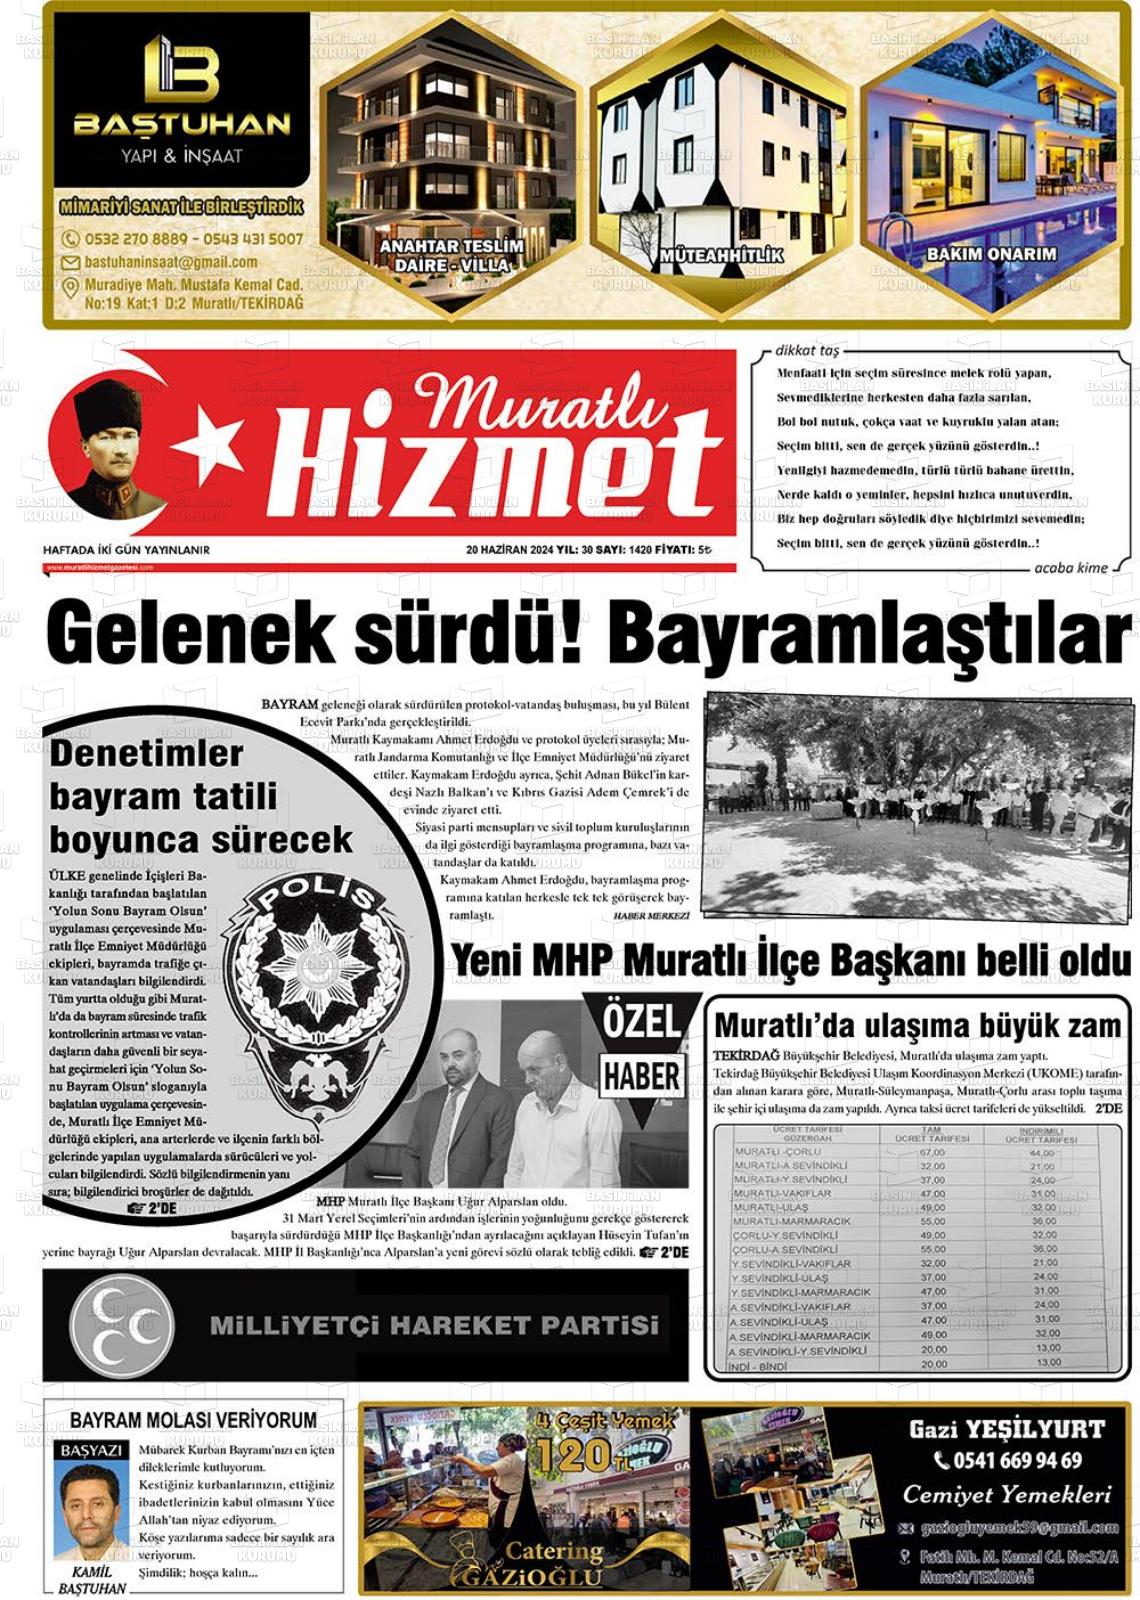 MURATLI HİZMET Gazetesi